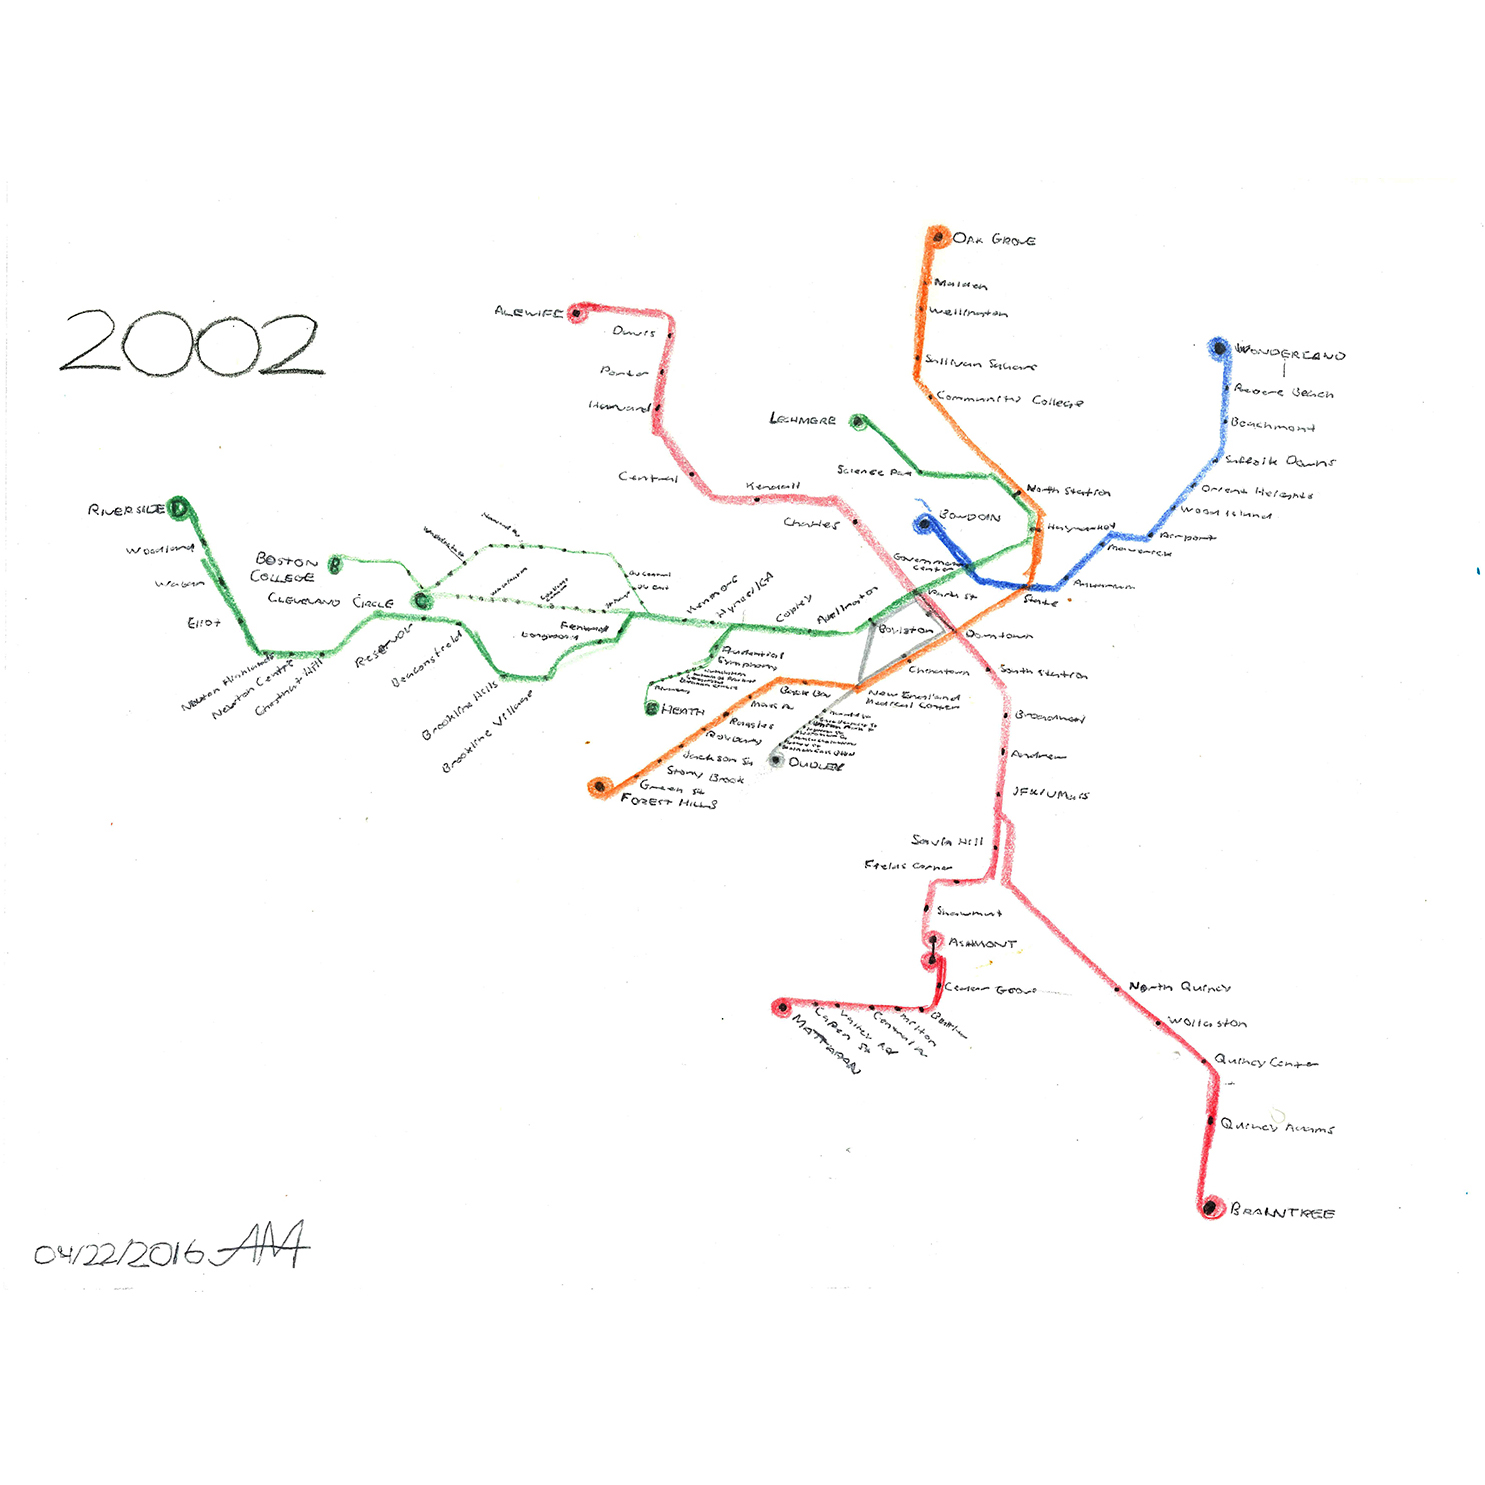 2002 T Map by Abdel Michel